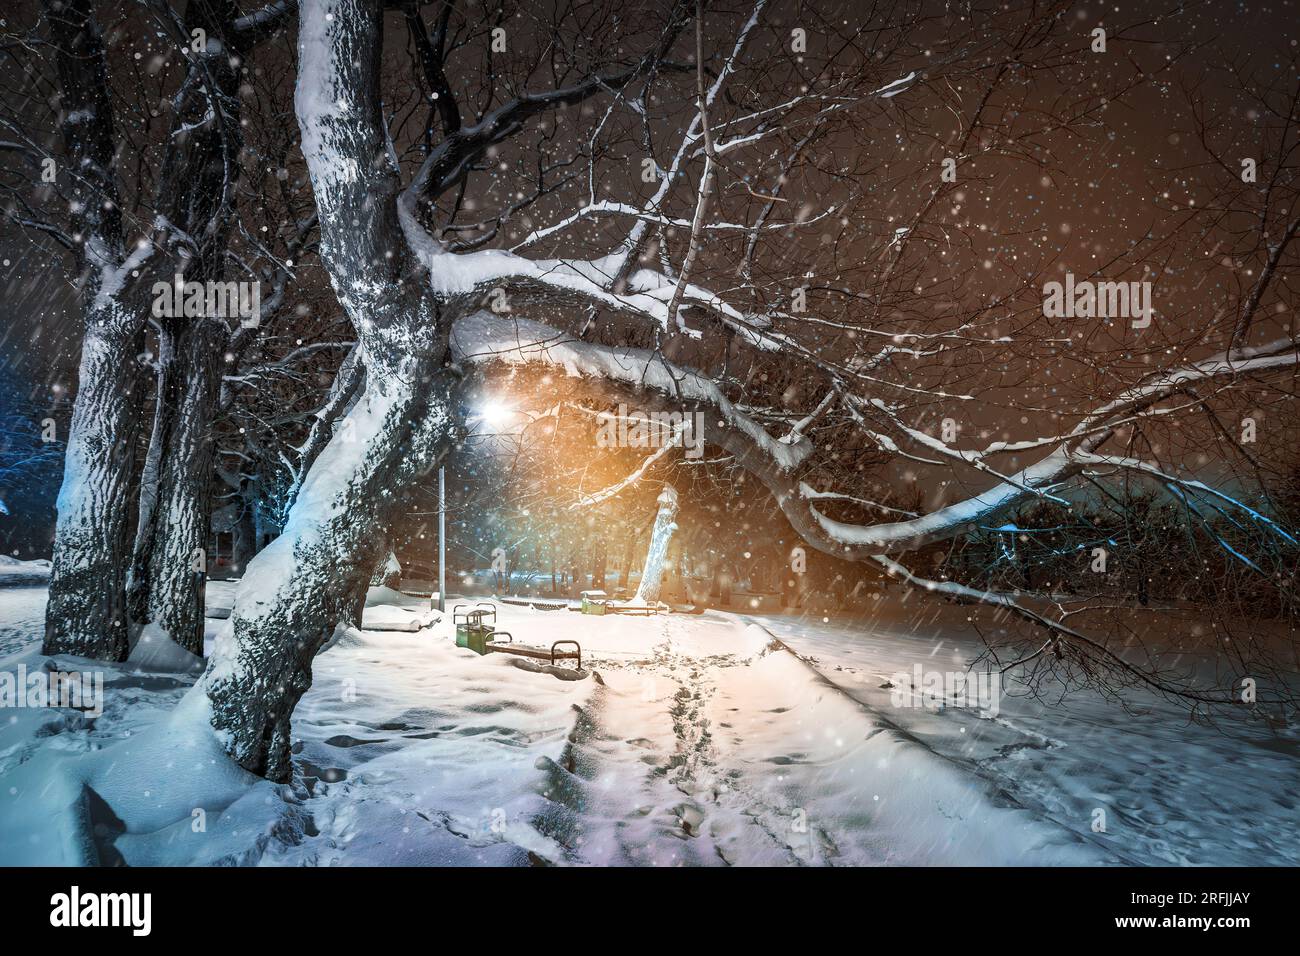 Großer, nackter Baum im Winter märchenhafte Schneesturmstimmung im kalten, verschneiten Nachtpark Stockfoto